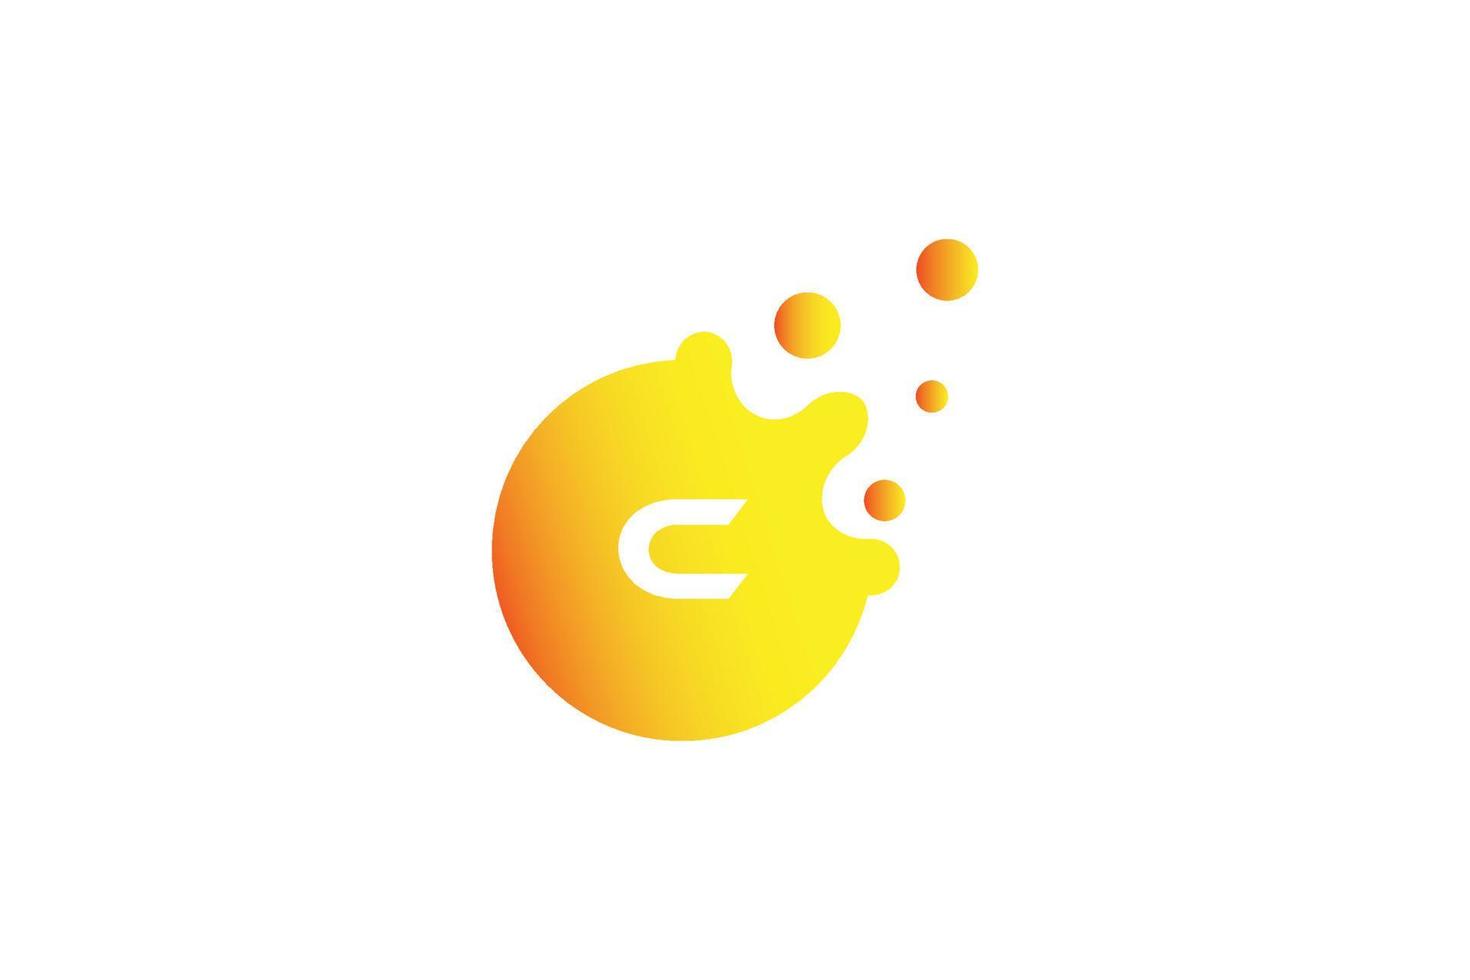 brief c logo . c brief ontwerp vector met dots vector illustratie . brief Mark logo met oranje en geel verloop.